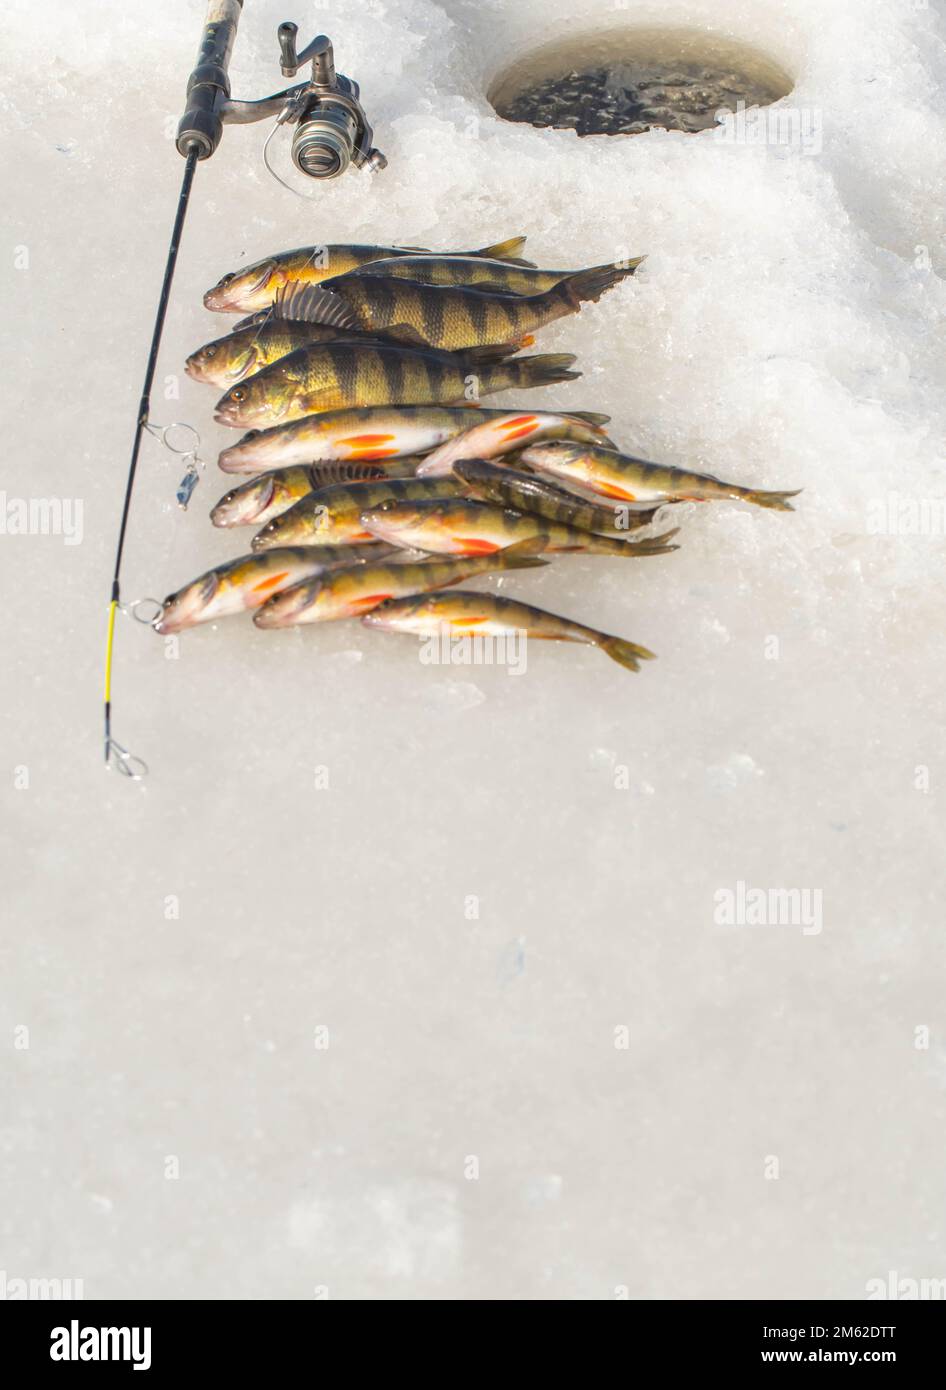 Winter fishing on ice, hobby leisure activities, catching fish Stock Photo